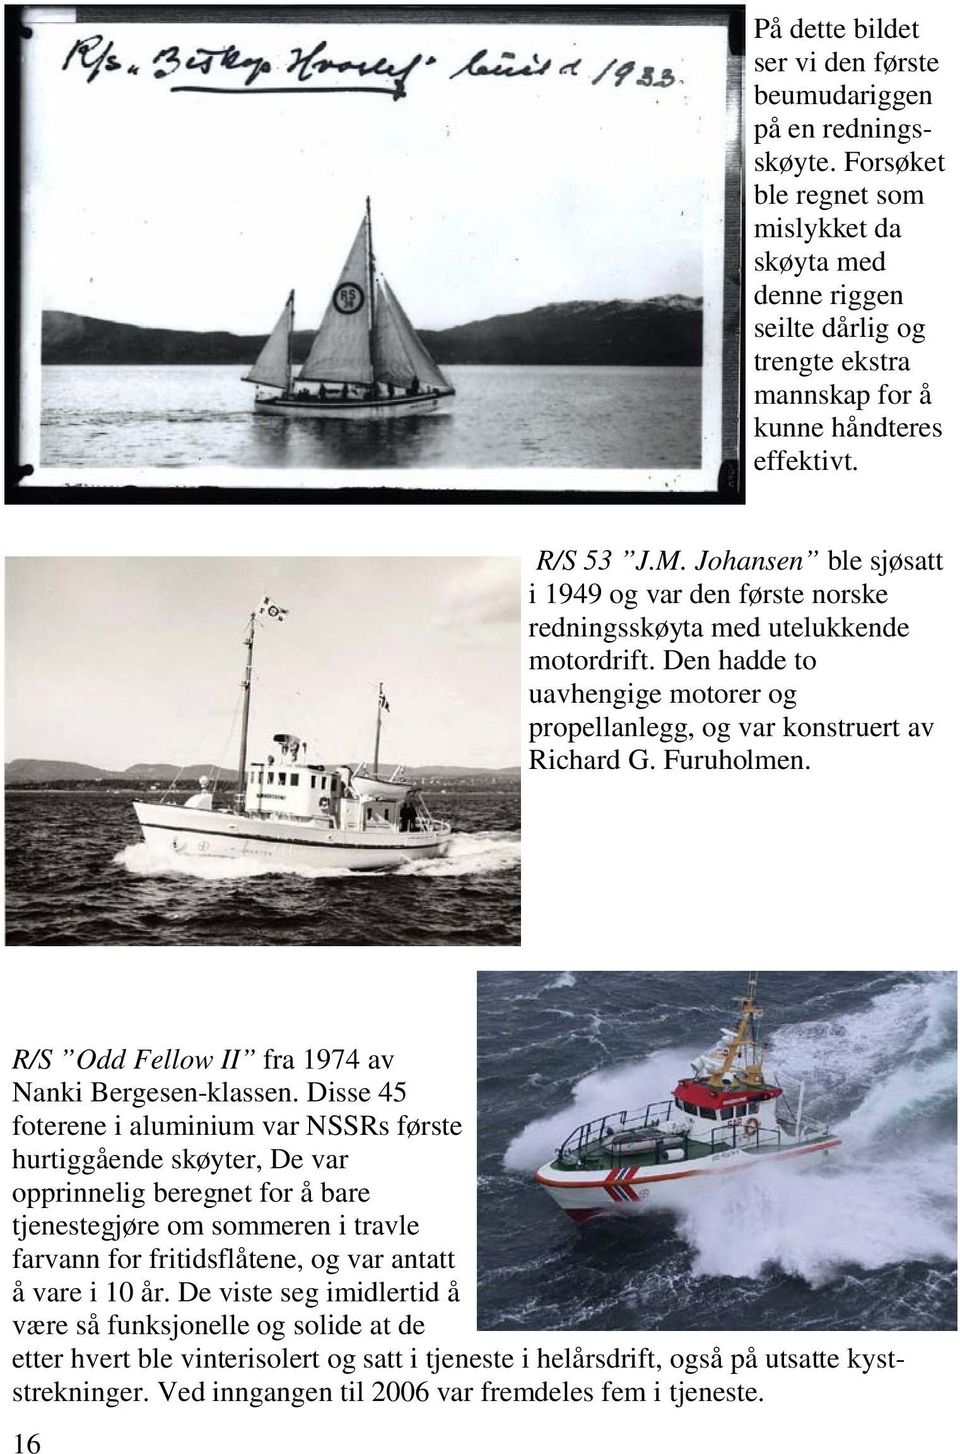 Johansen ble sjøsatt i 1949 og var den første norske redningsskøyta med utelukkende motordrift. Den hadde to uavhengige motorer og propellanlegg, og var konstruert av Richard G. Furuholmen.